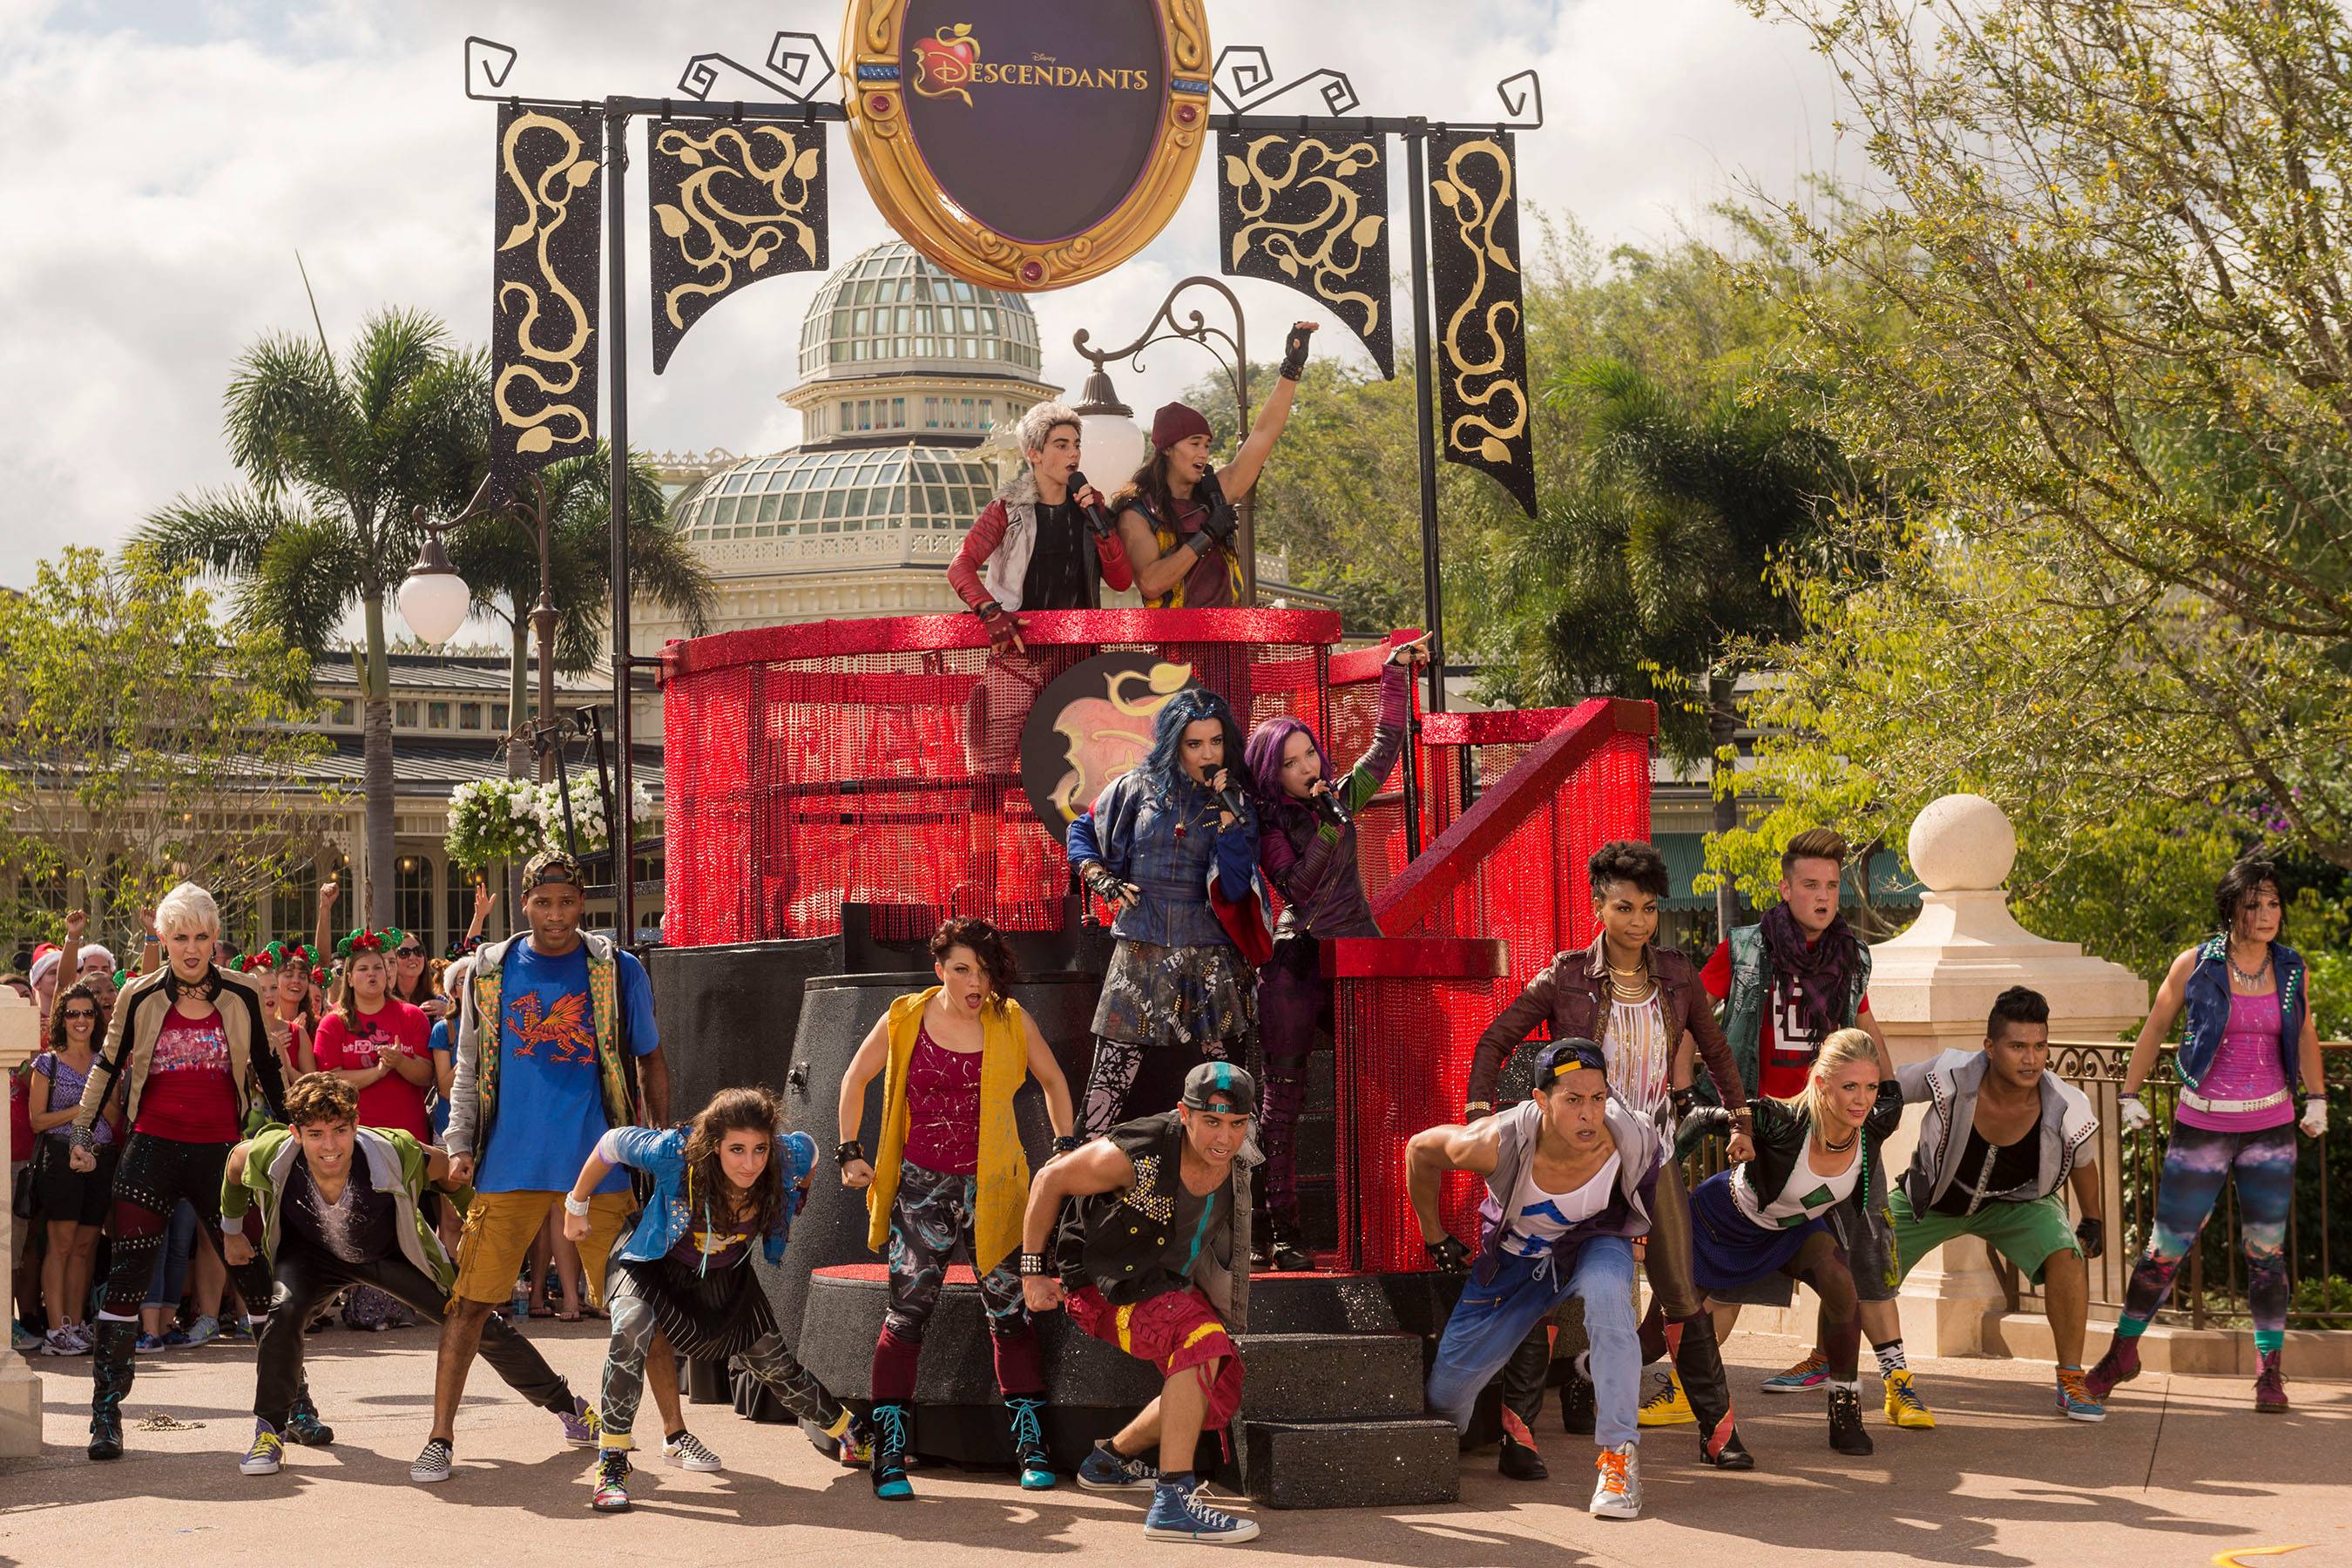 Disney Parks Unforgettable Christmas Celebration performance - Cast of Descendants